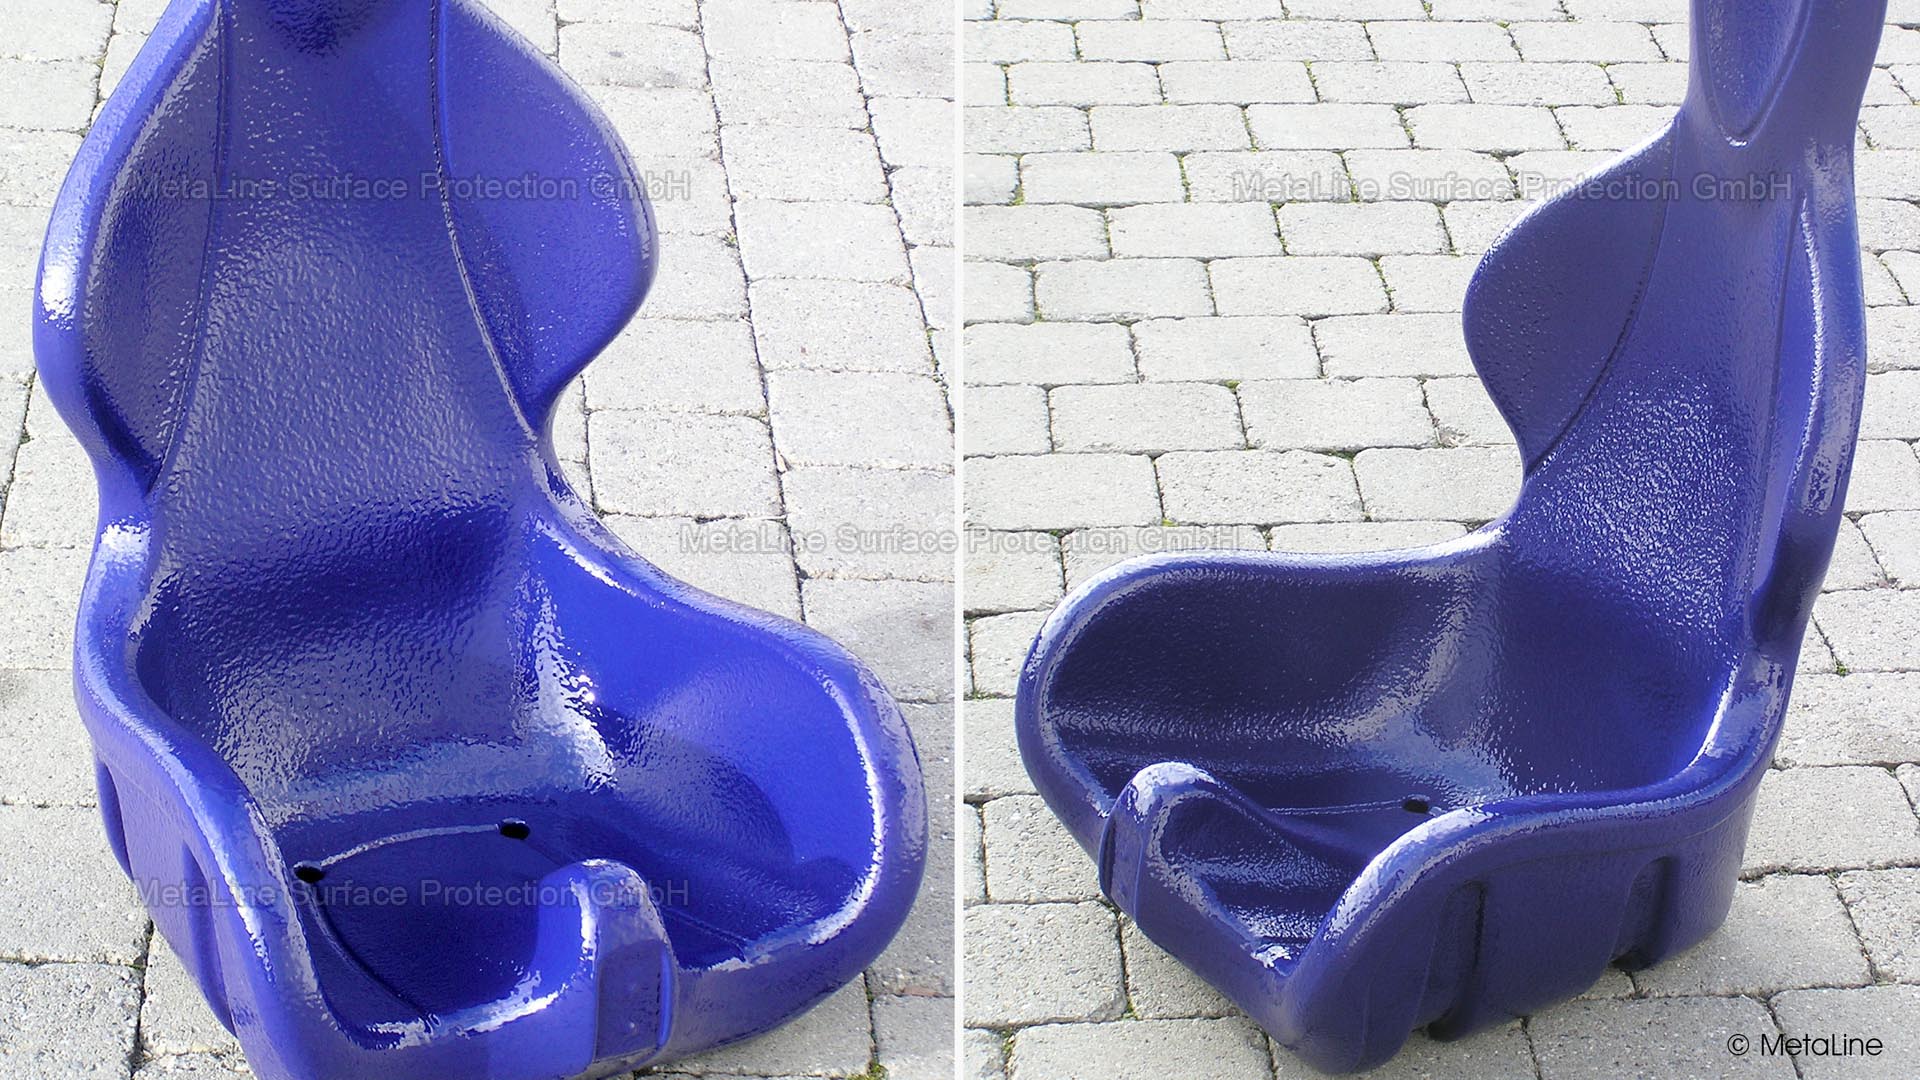 1990-0093B_Achterbahnsitz_Reparatur_amusement_ride_roller_coaster_seat_repair_coating